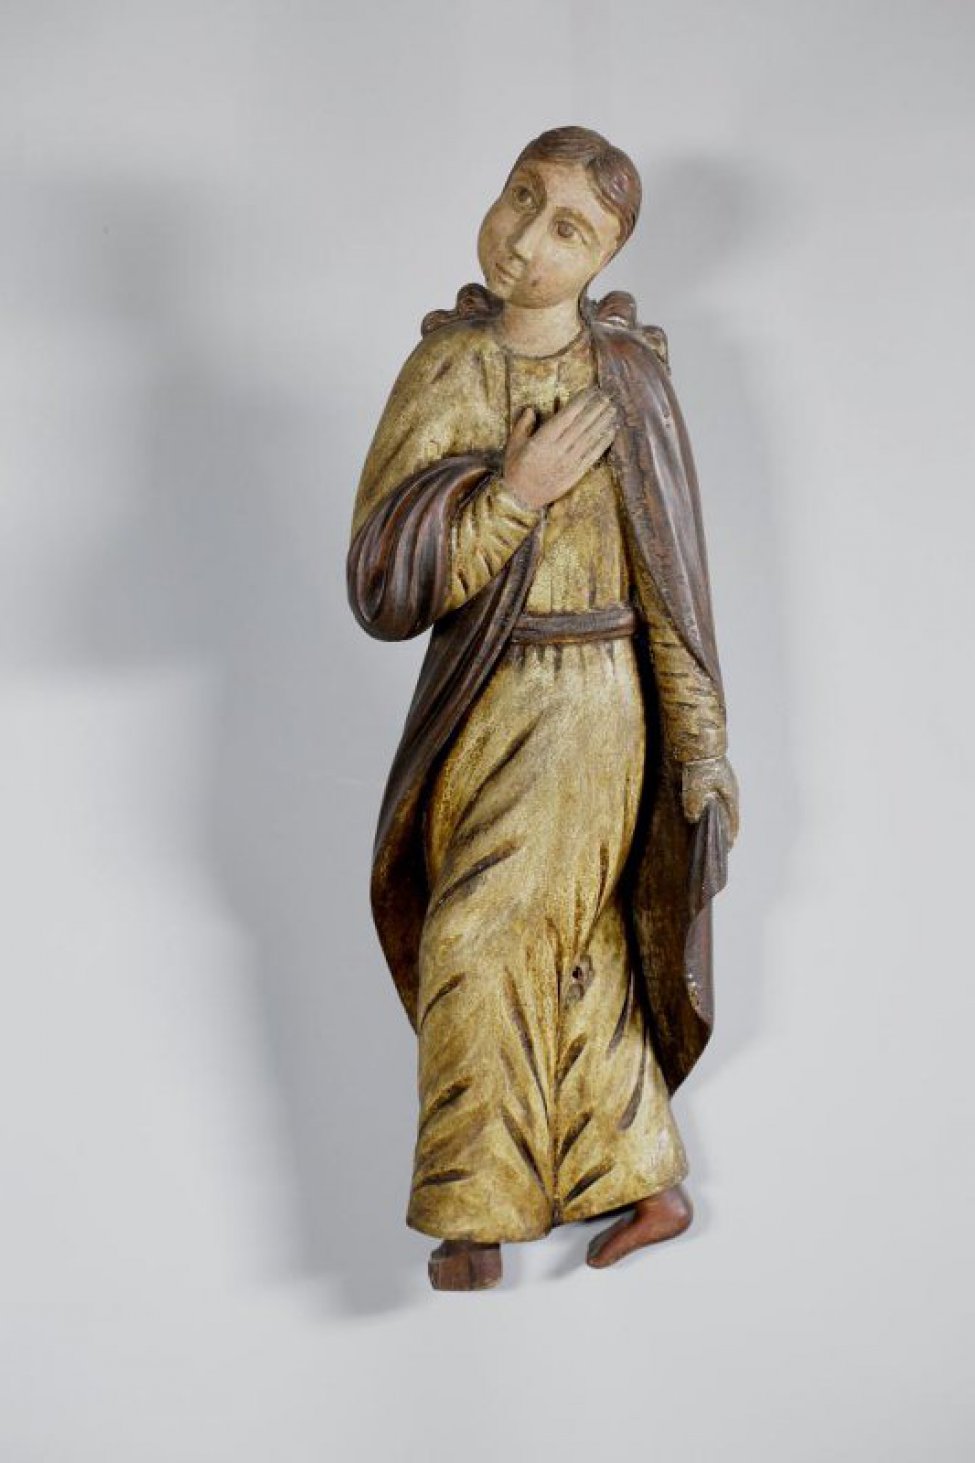 Иоанн Богослов изображен во фронтальном положении корпуса, ноги вырезаны идущими вправо, к кресту. Правая рука лежит на груди, левая опущена. Позолоченный хитон покрыт посеребренным гиматием.